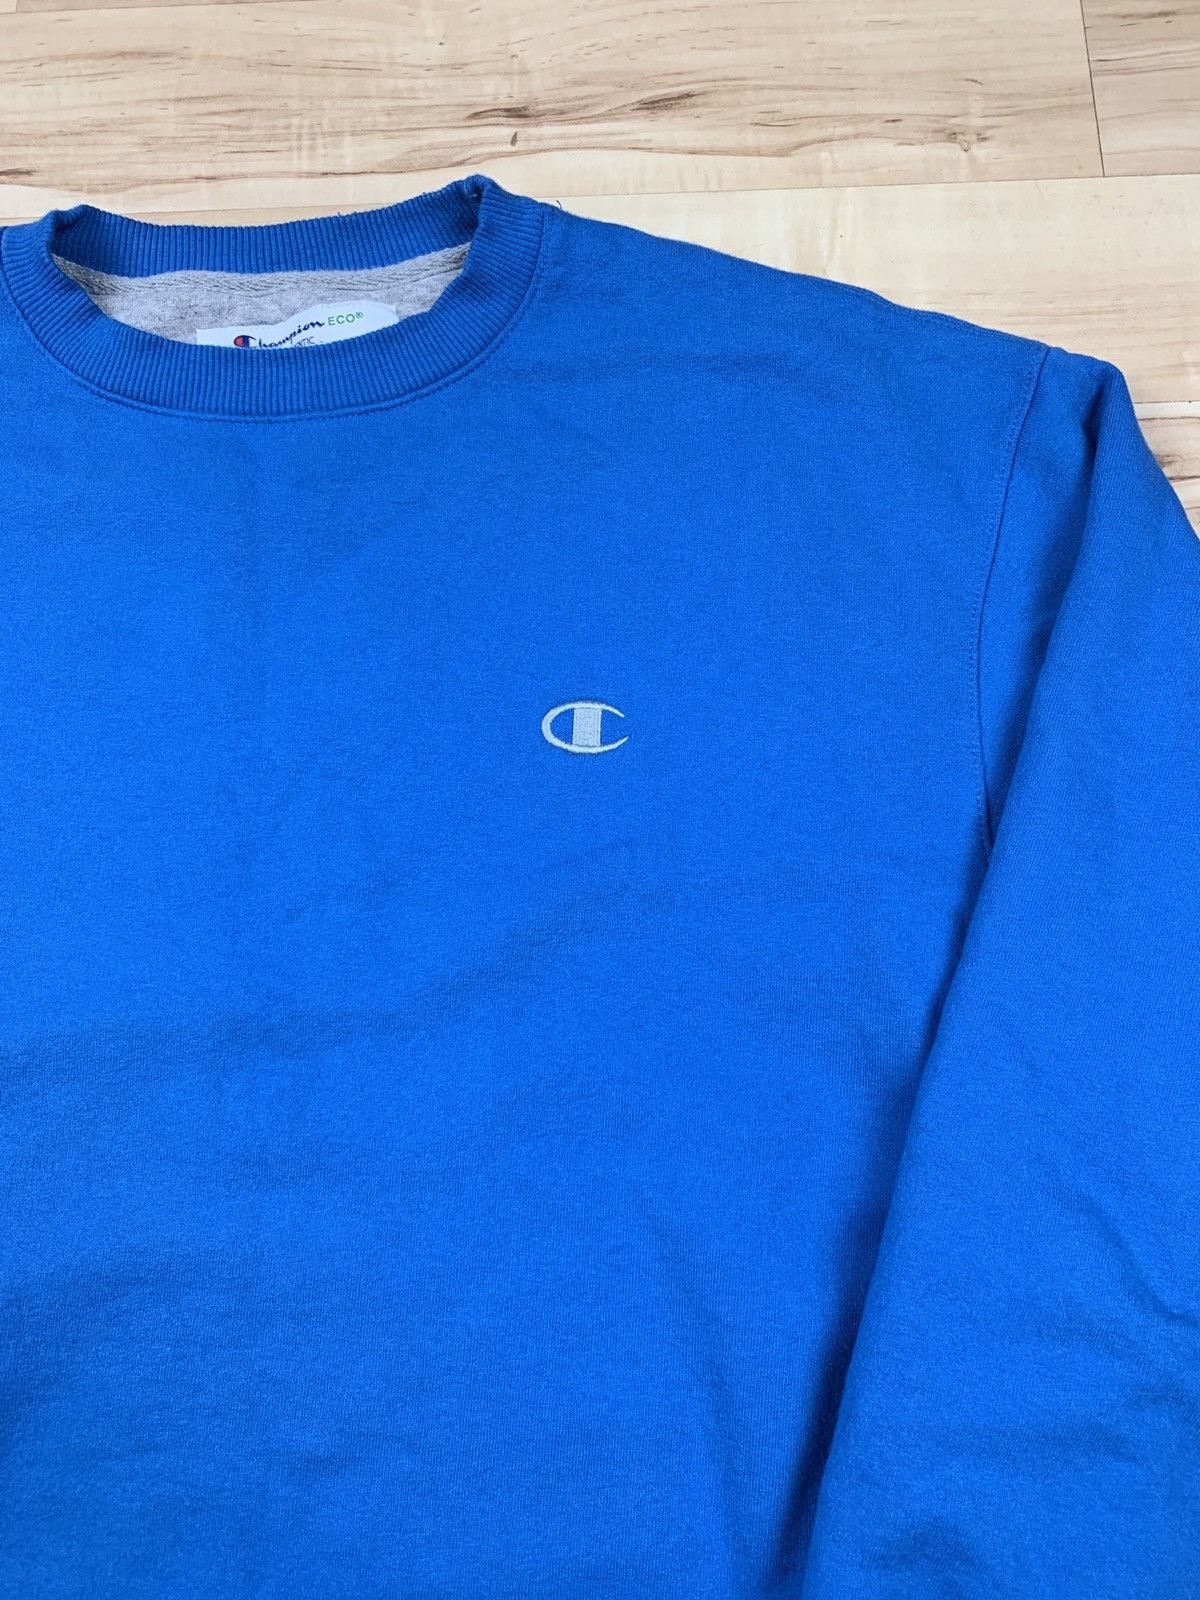 Vintage Champion Crewneck Sweatshirt Light Blue Size US L / EU 52-54 / 3 - 2 Preview